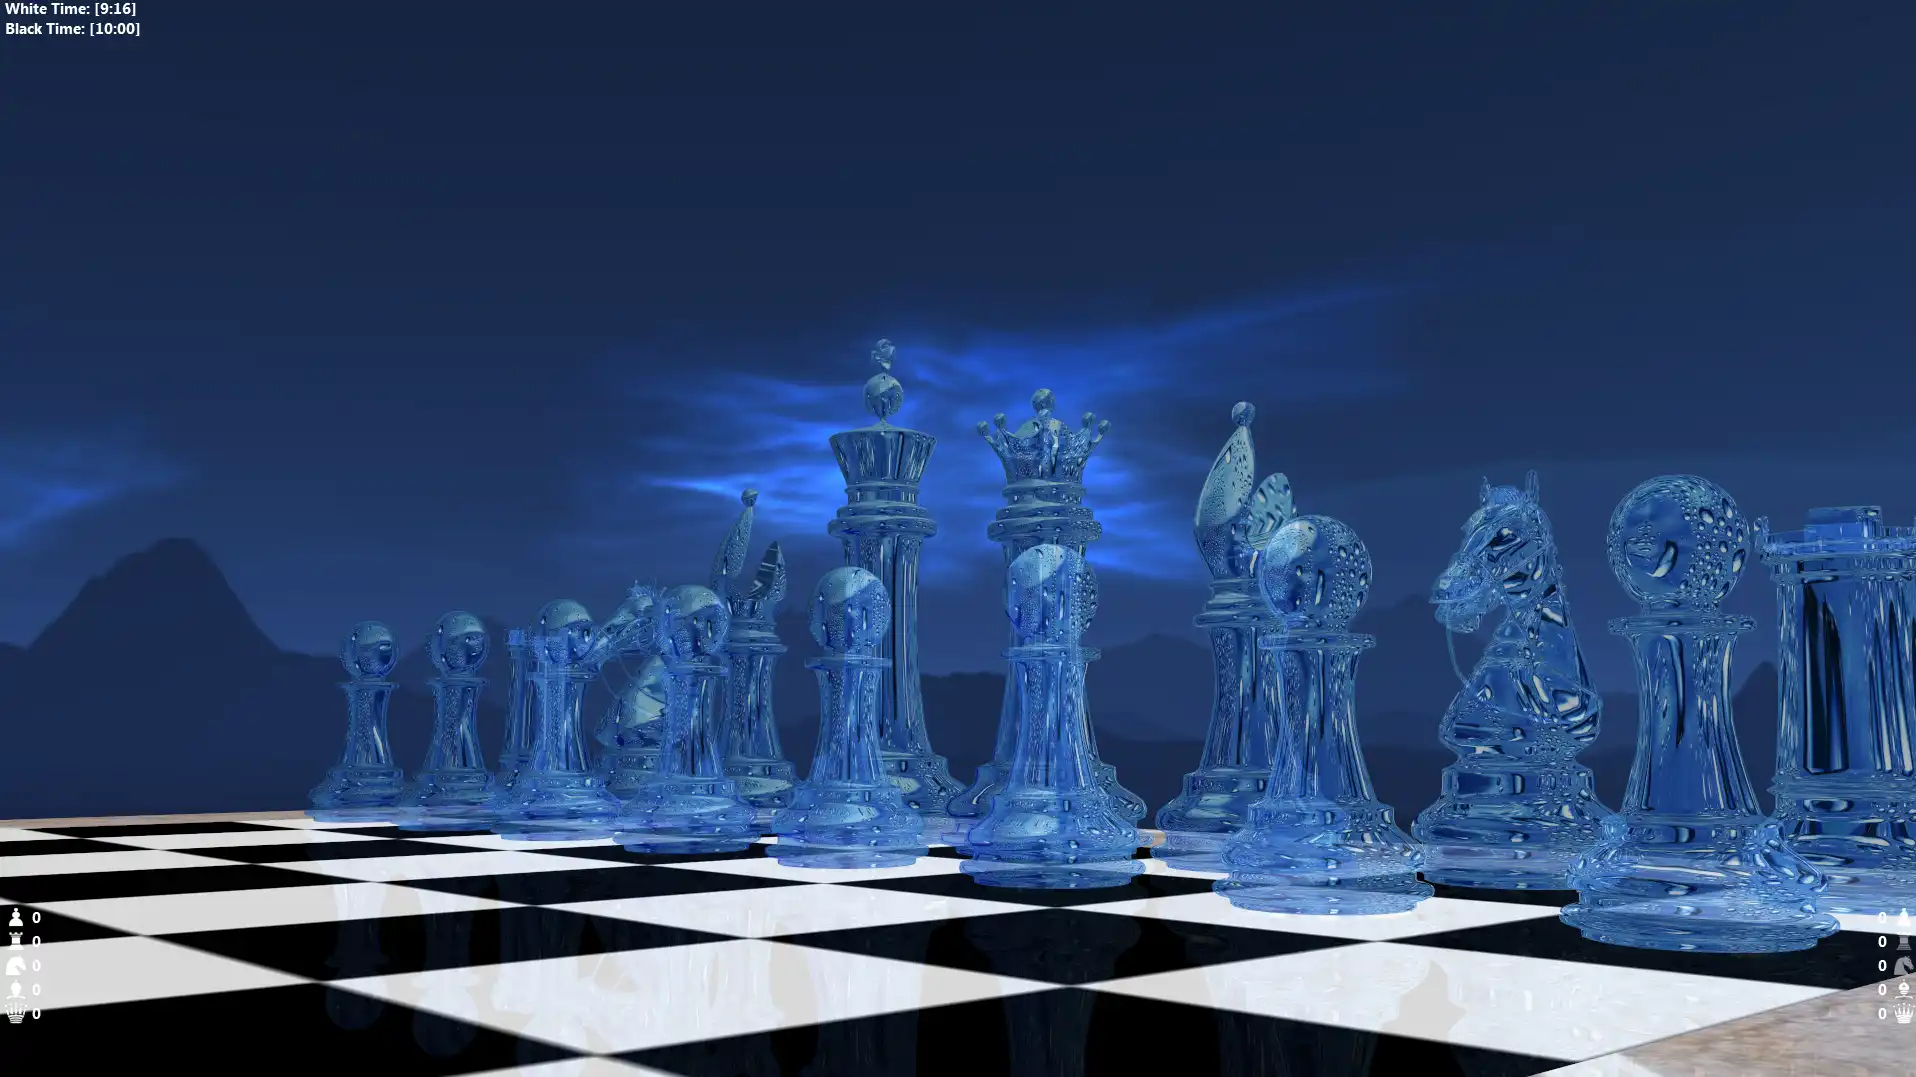 ഓൺലൈനിൽ Linux-ൽ Windows-ൽ പ്രവർത്തിപ്പിക്കാൻ വെബ് ടൂൾ അല്ലെങ്കിൽ വെബ് ആപ്പ് Ethereal Chess 3D ഡൗൺലോഡ് ചെയ്യുക